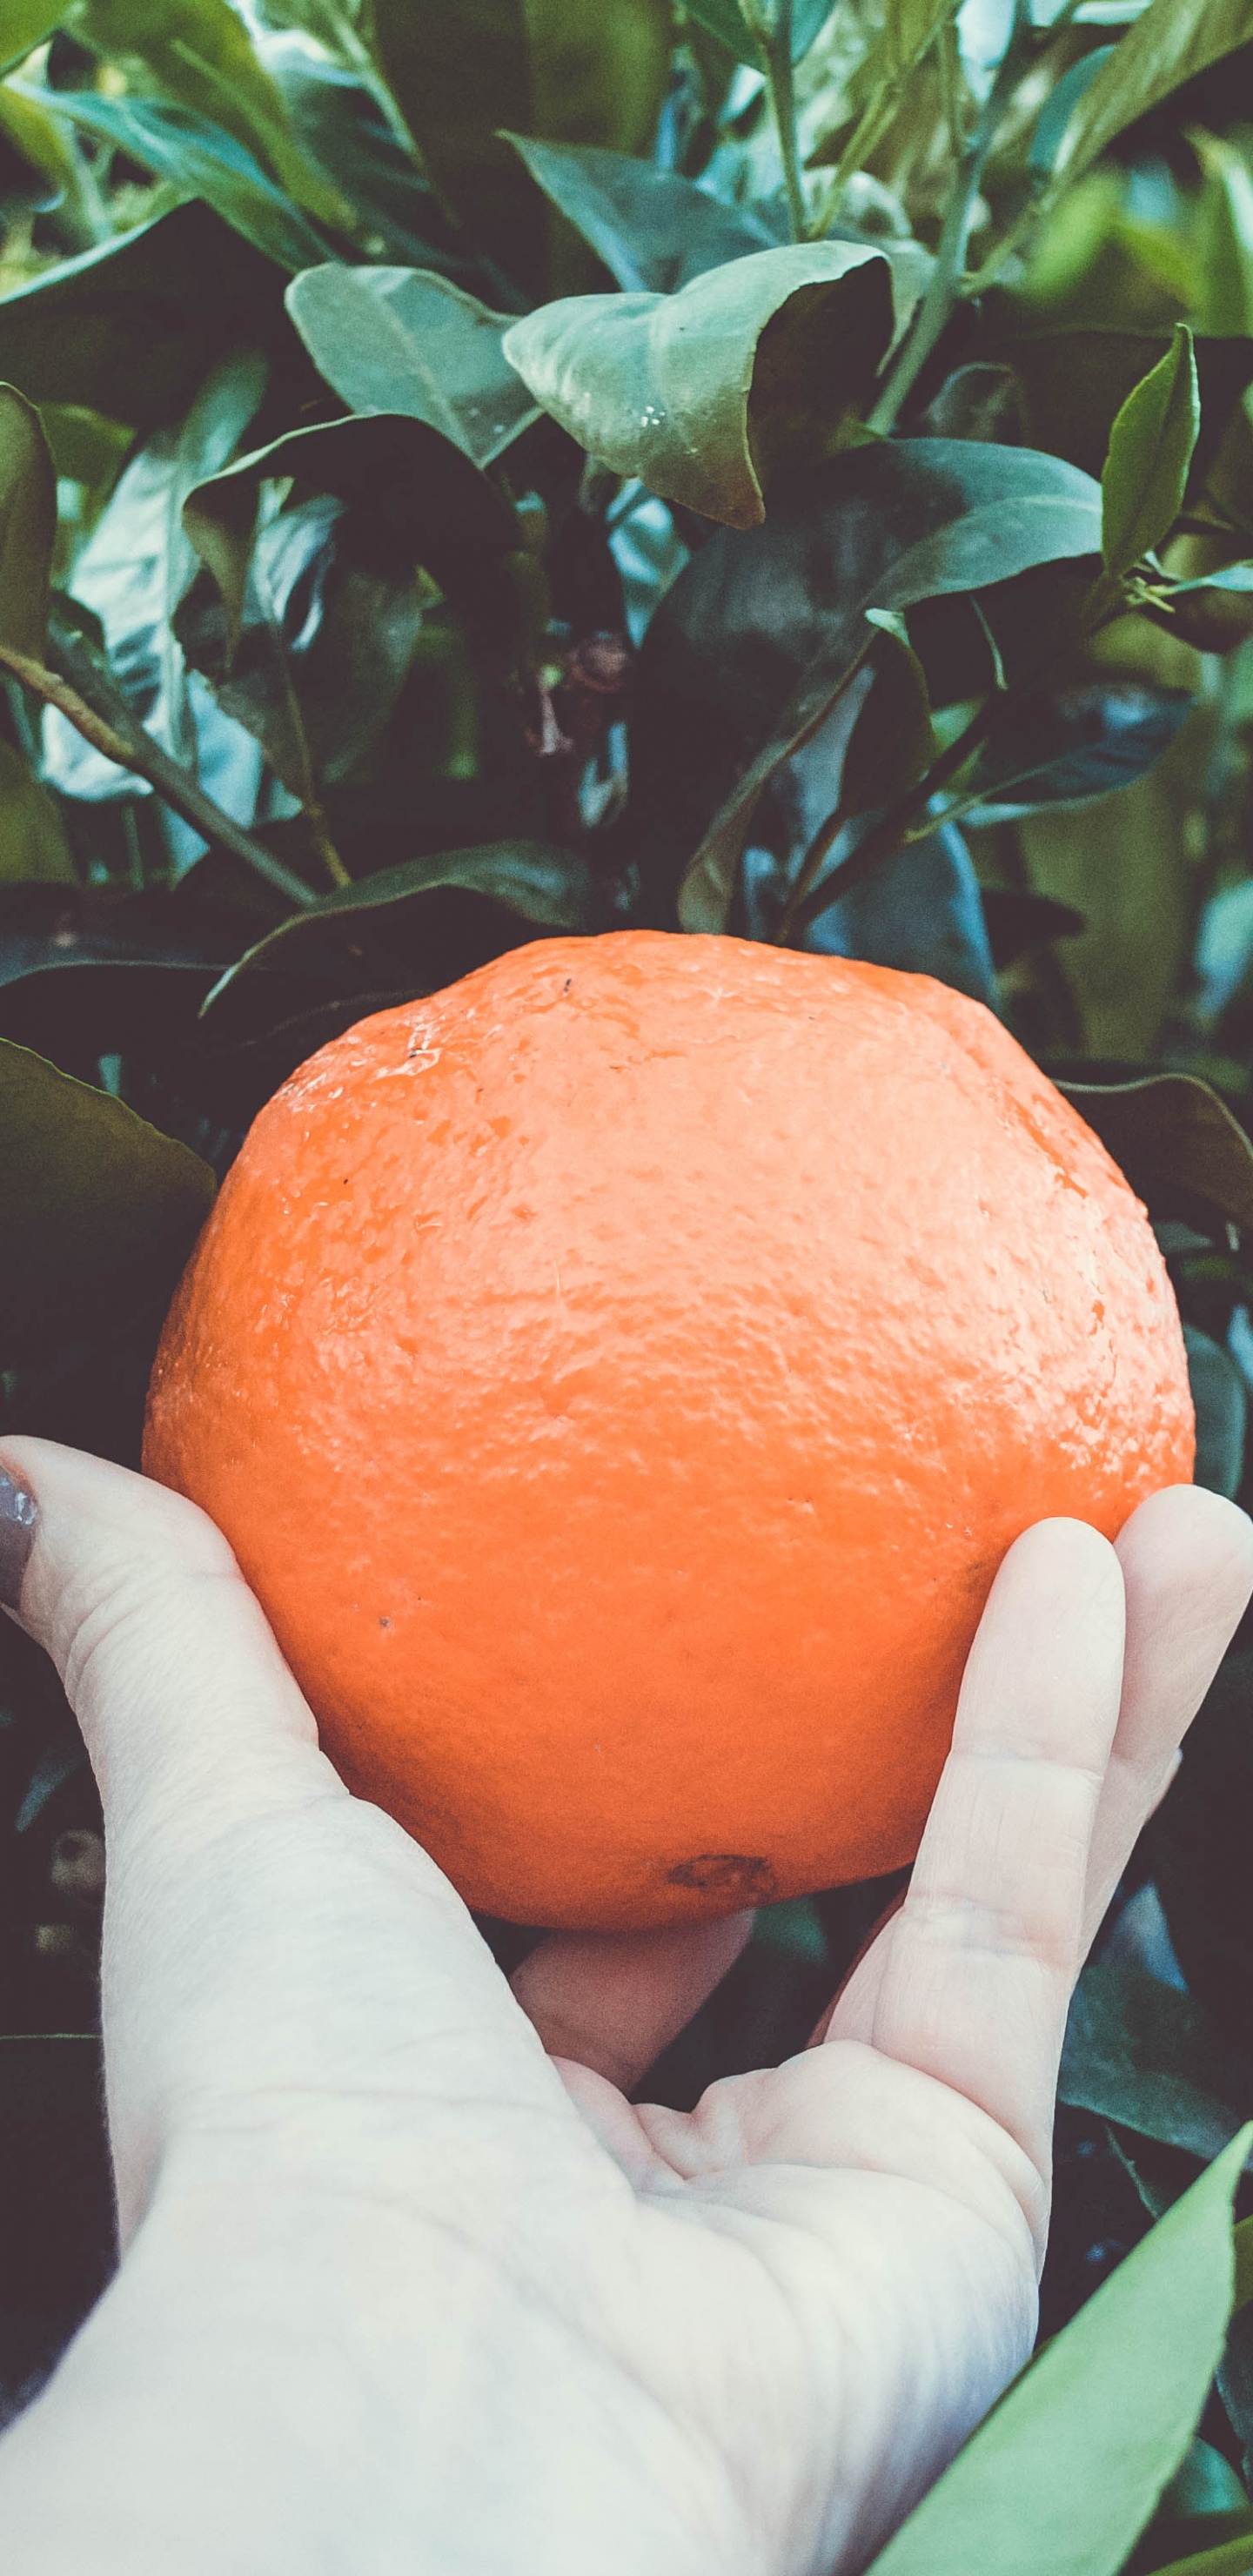 Persona Sosteniendo Fruta Naranja Durante el Día. Wallpaper in 1440x2960 Resolution